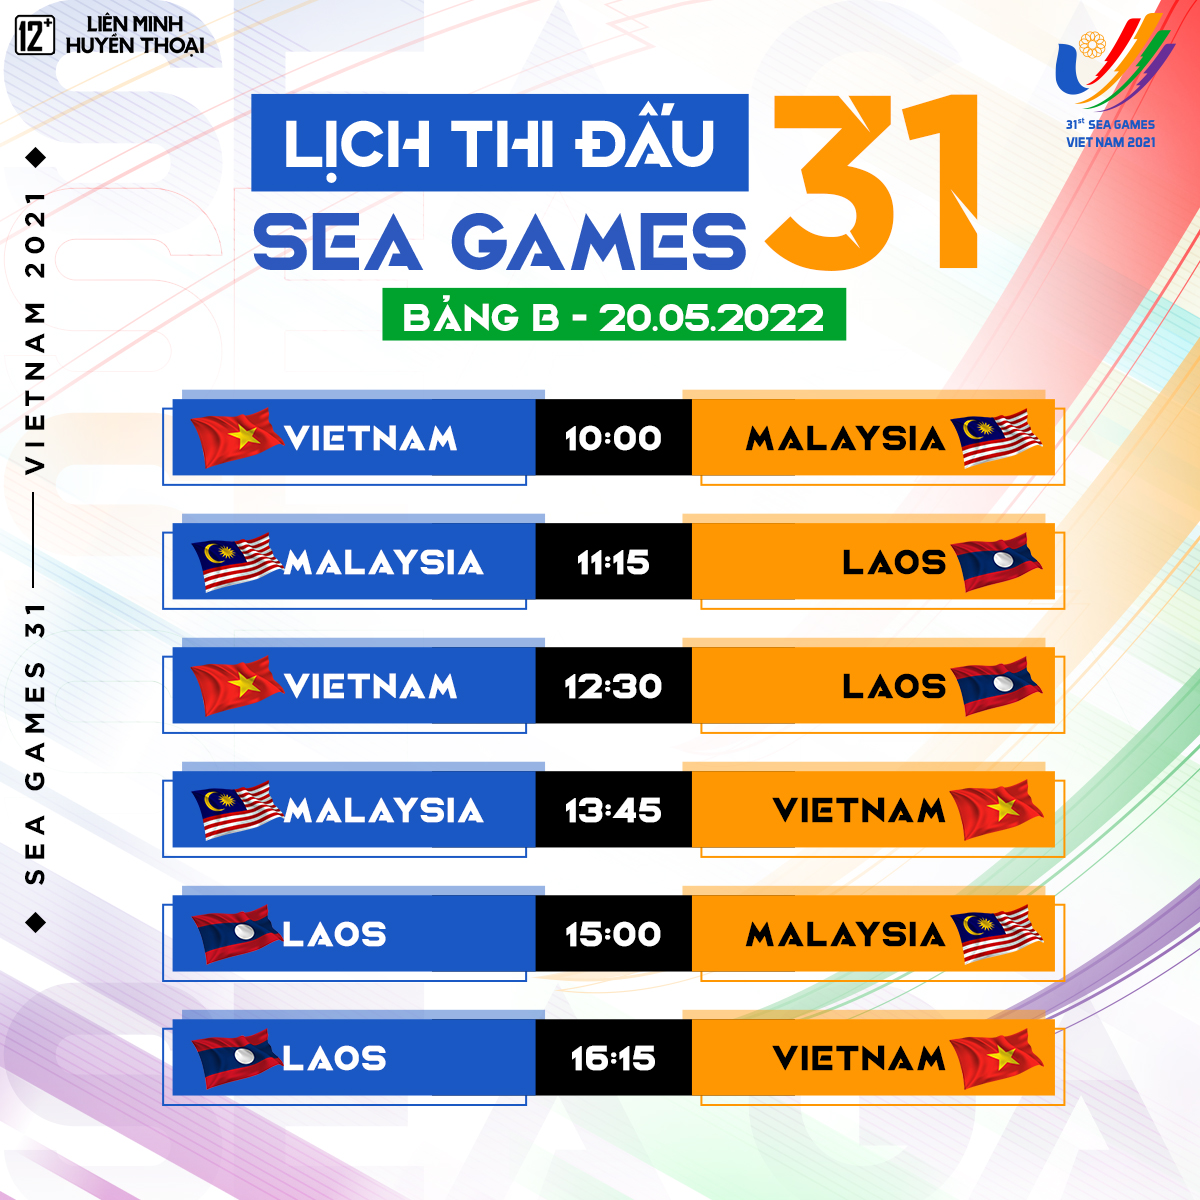 Đội tuyển LMHT Việt Nam tập luyện cho SEA Games 31, Kati khẳng định: Vẫn sẽ chiến hết mình với đối thủ nữ - Ảnh 2.